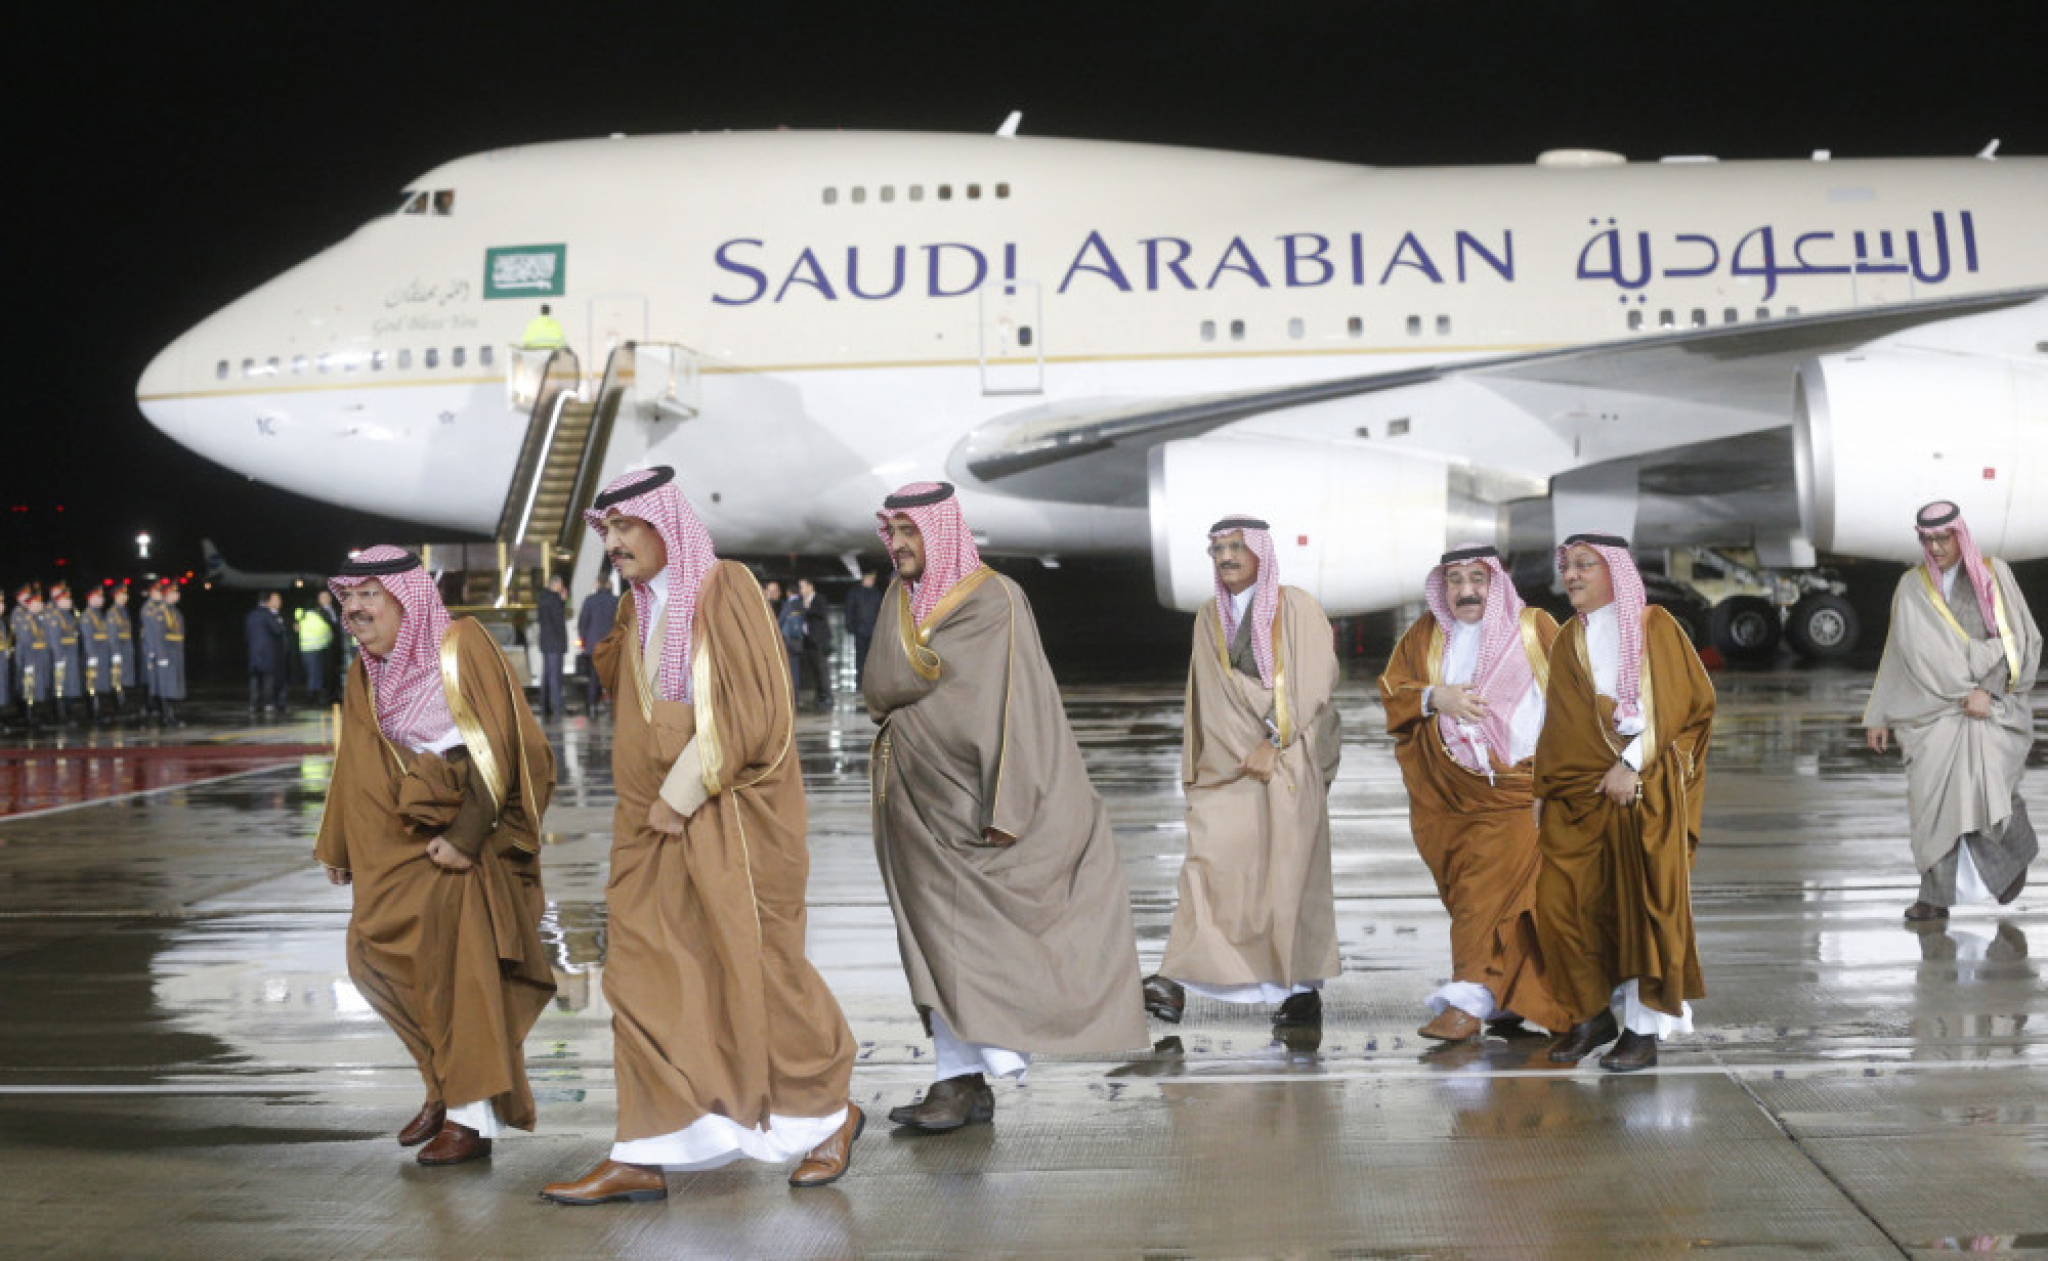 kraljevska porodica Saudijske Arabije